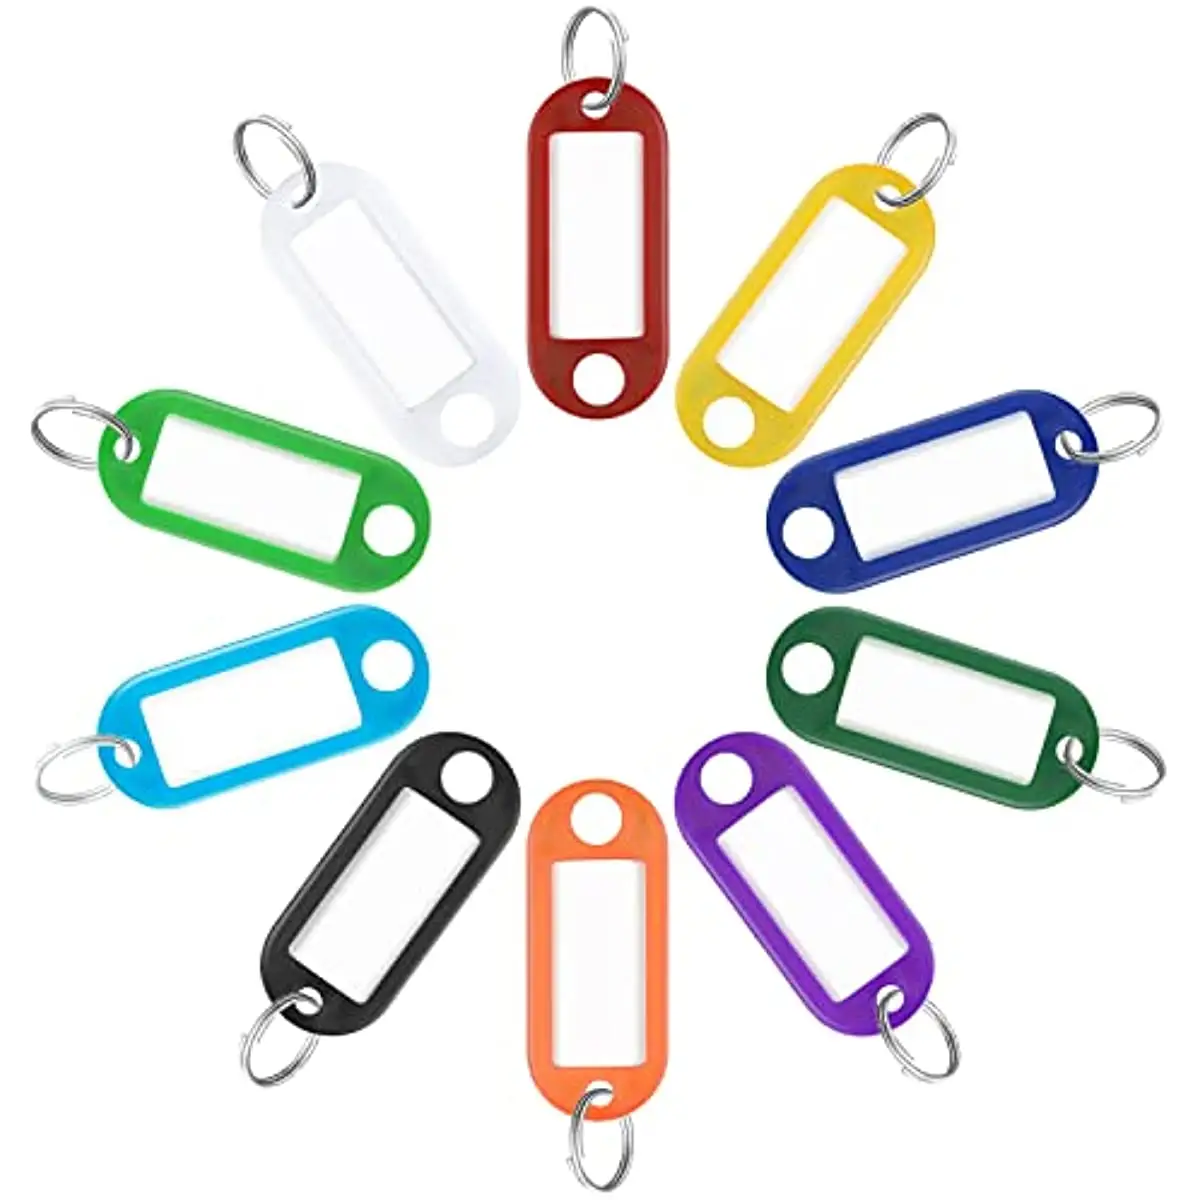 Kunststoff 10 verschiedene Farben Schlüssel bund Tags mit Etiketten Ident ifika toren ID Tags mit Split Ring Gepäck Schlüssel anhänger Schlüssel anhänger Zubehör